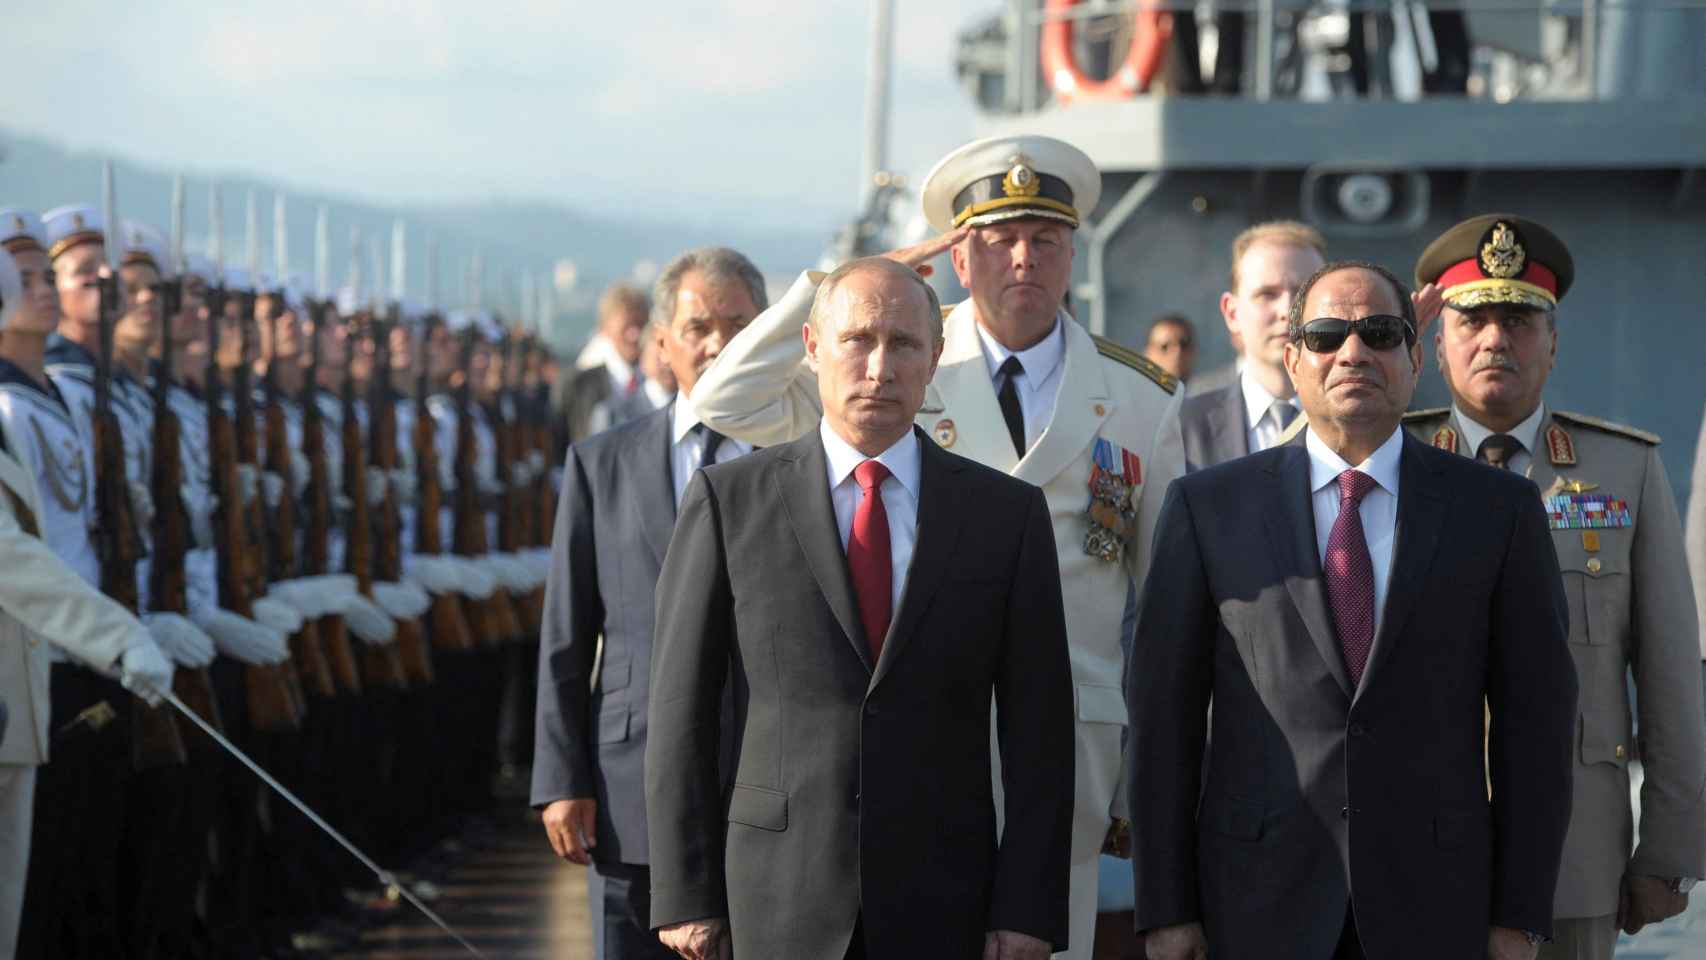 El presidente de Rusia, Vladimir Putin, su homólogo egipcio, Abdel Fattah al-Sisi, y el ministro de Defensa de Rusia, Sergei Shoigu, asisten a una ceremonia de bienvenida a bordo del crucero de misiles guiados Moskva en el puerto del Mar Negro de Sochi, Rusia, el 12 de agosto de 2014.